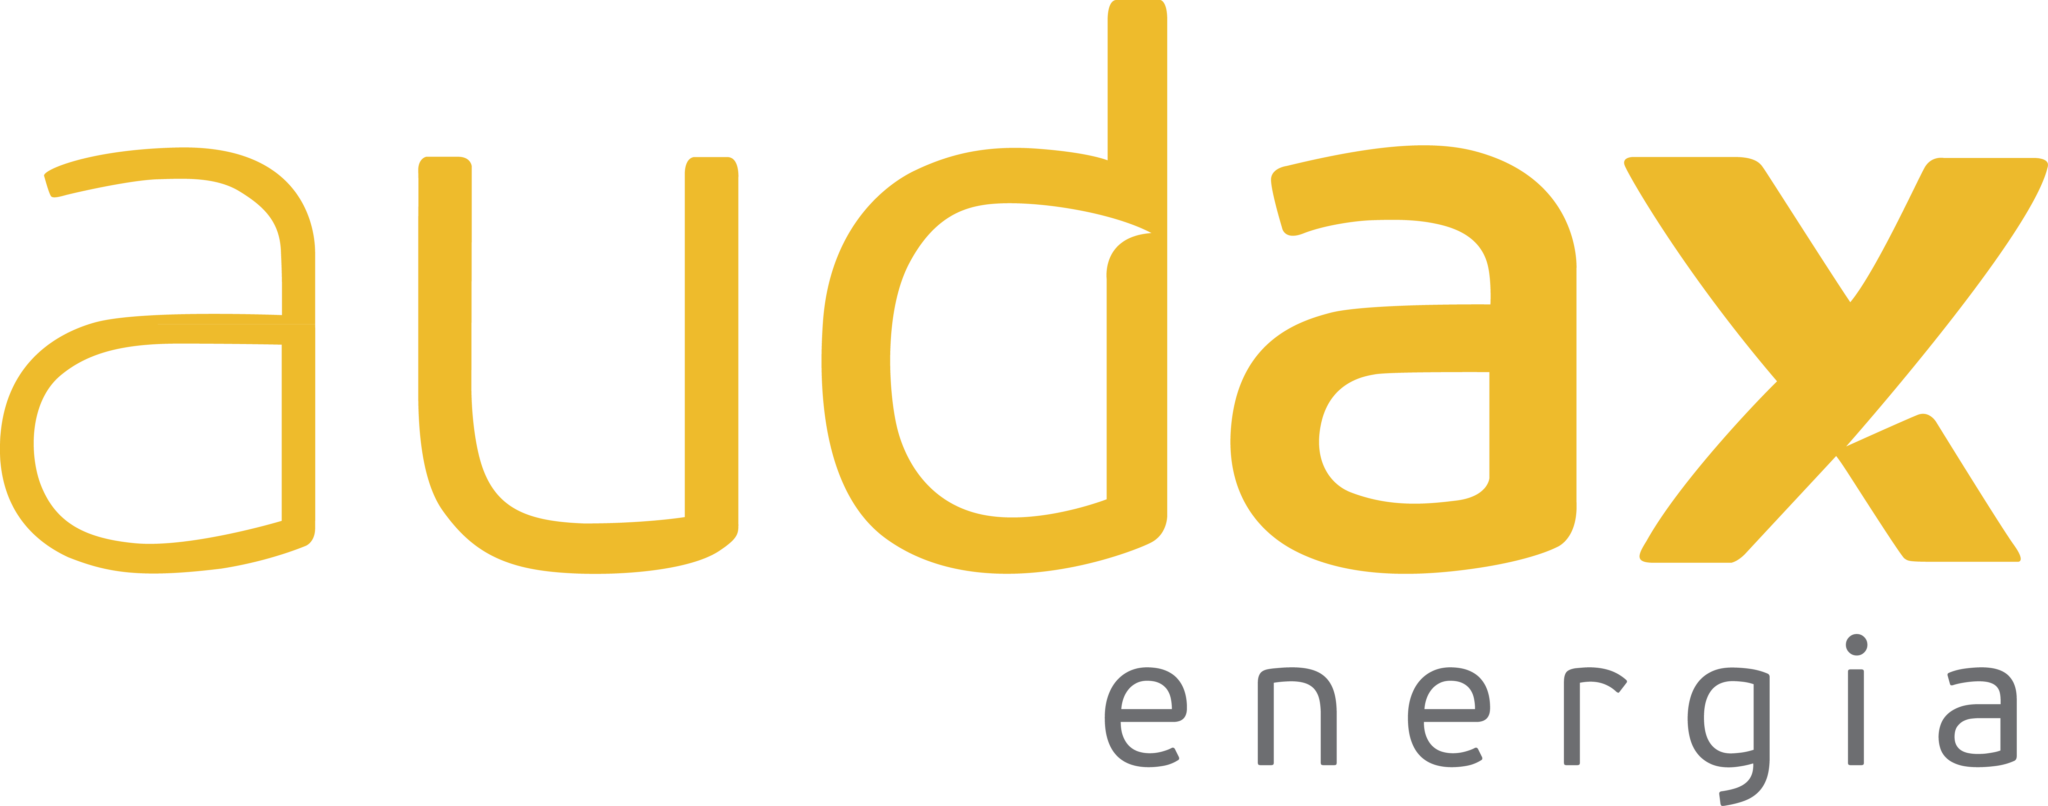 logo-audax-energia-pt.png